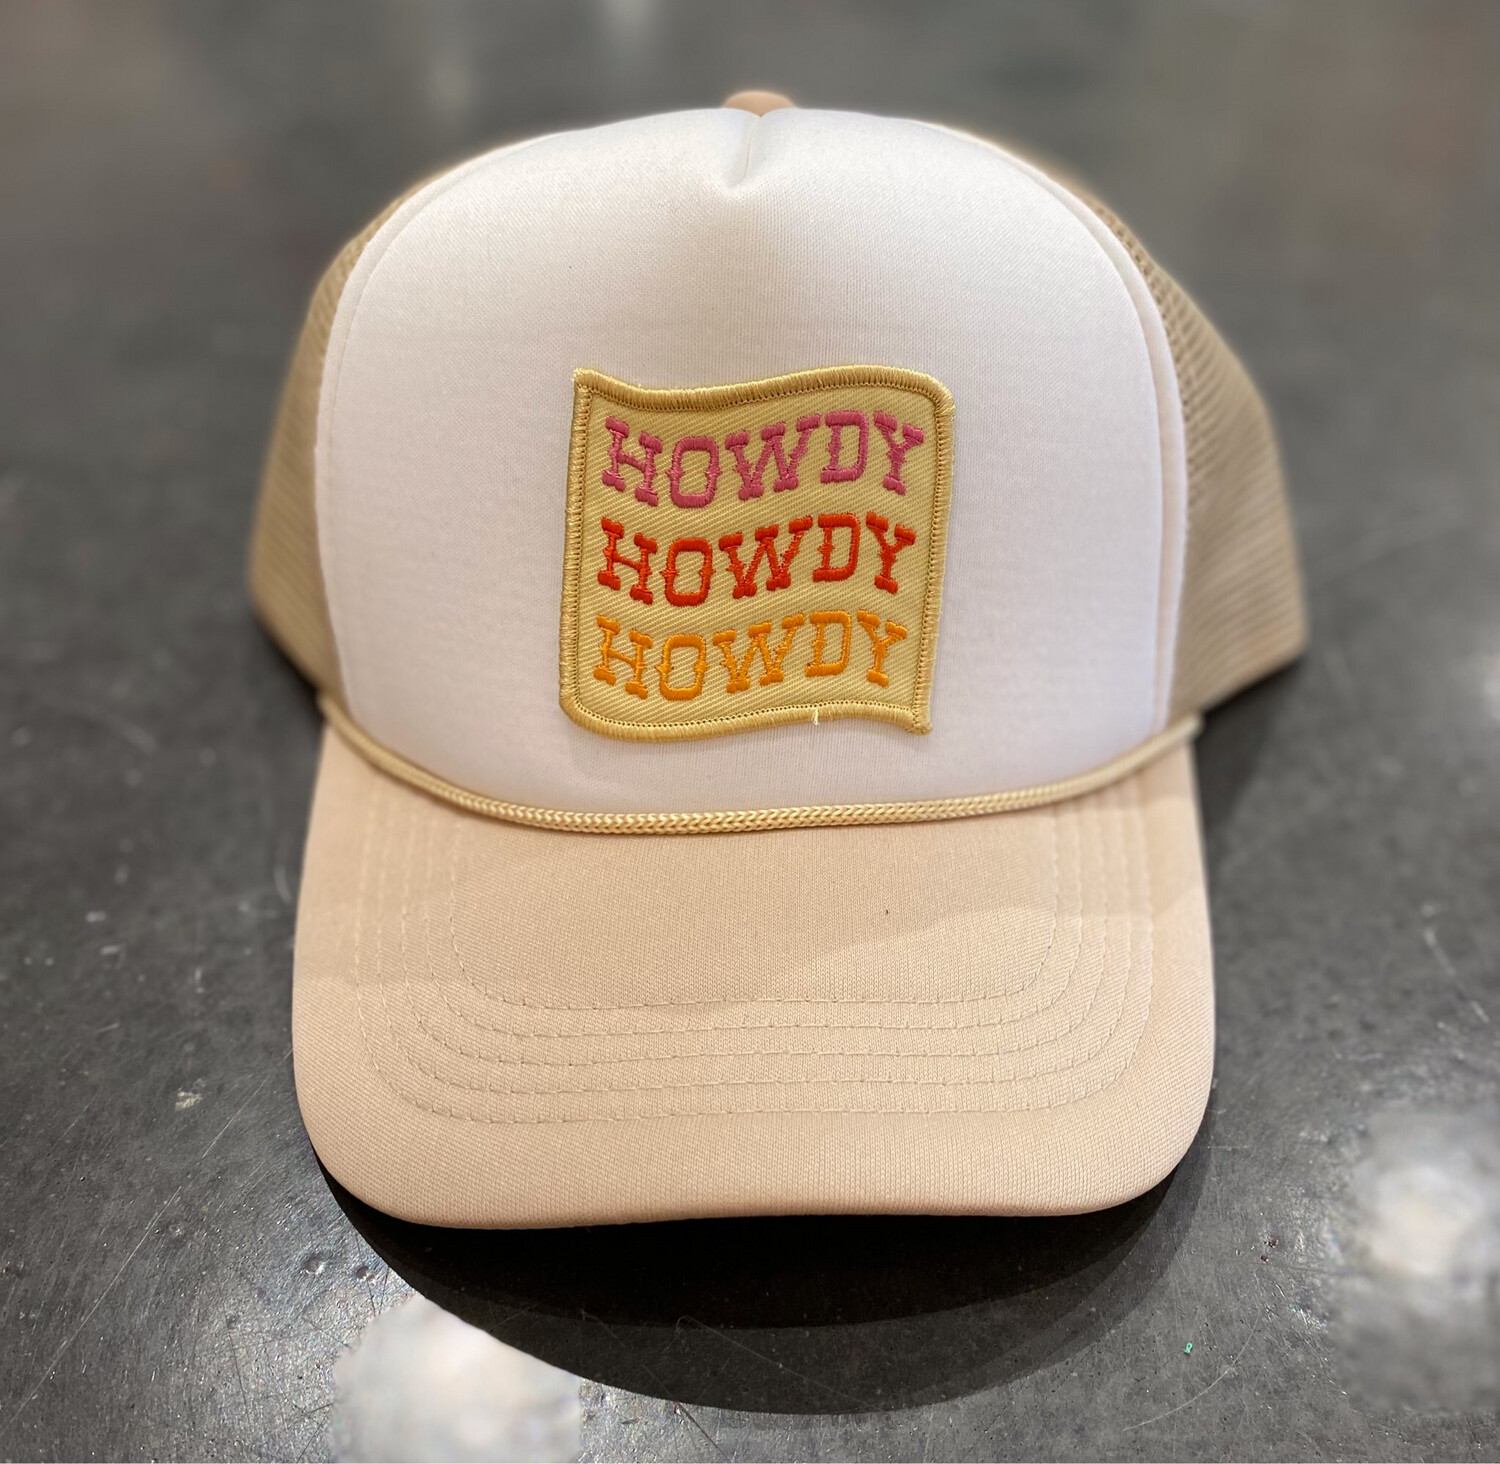 Howdy Howdy Howdy Trucker-Tan